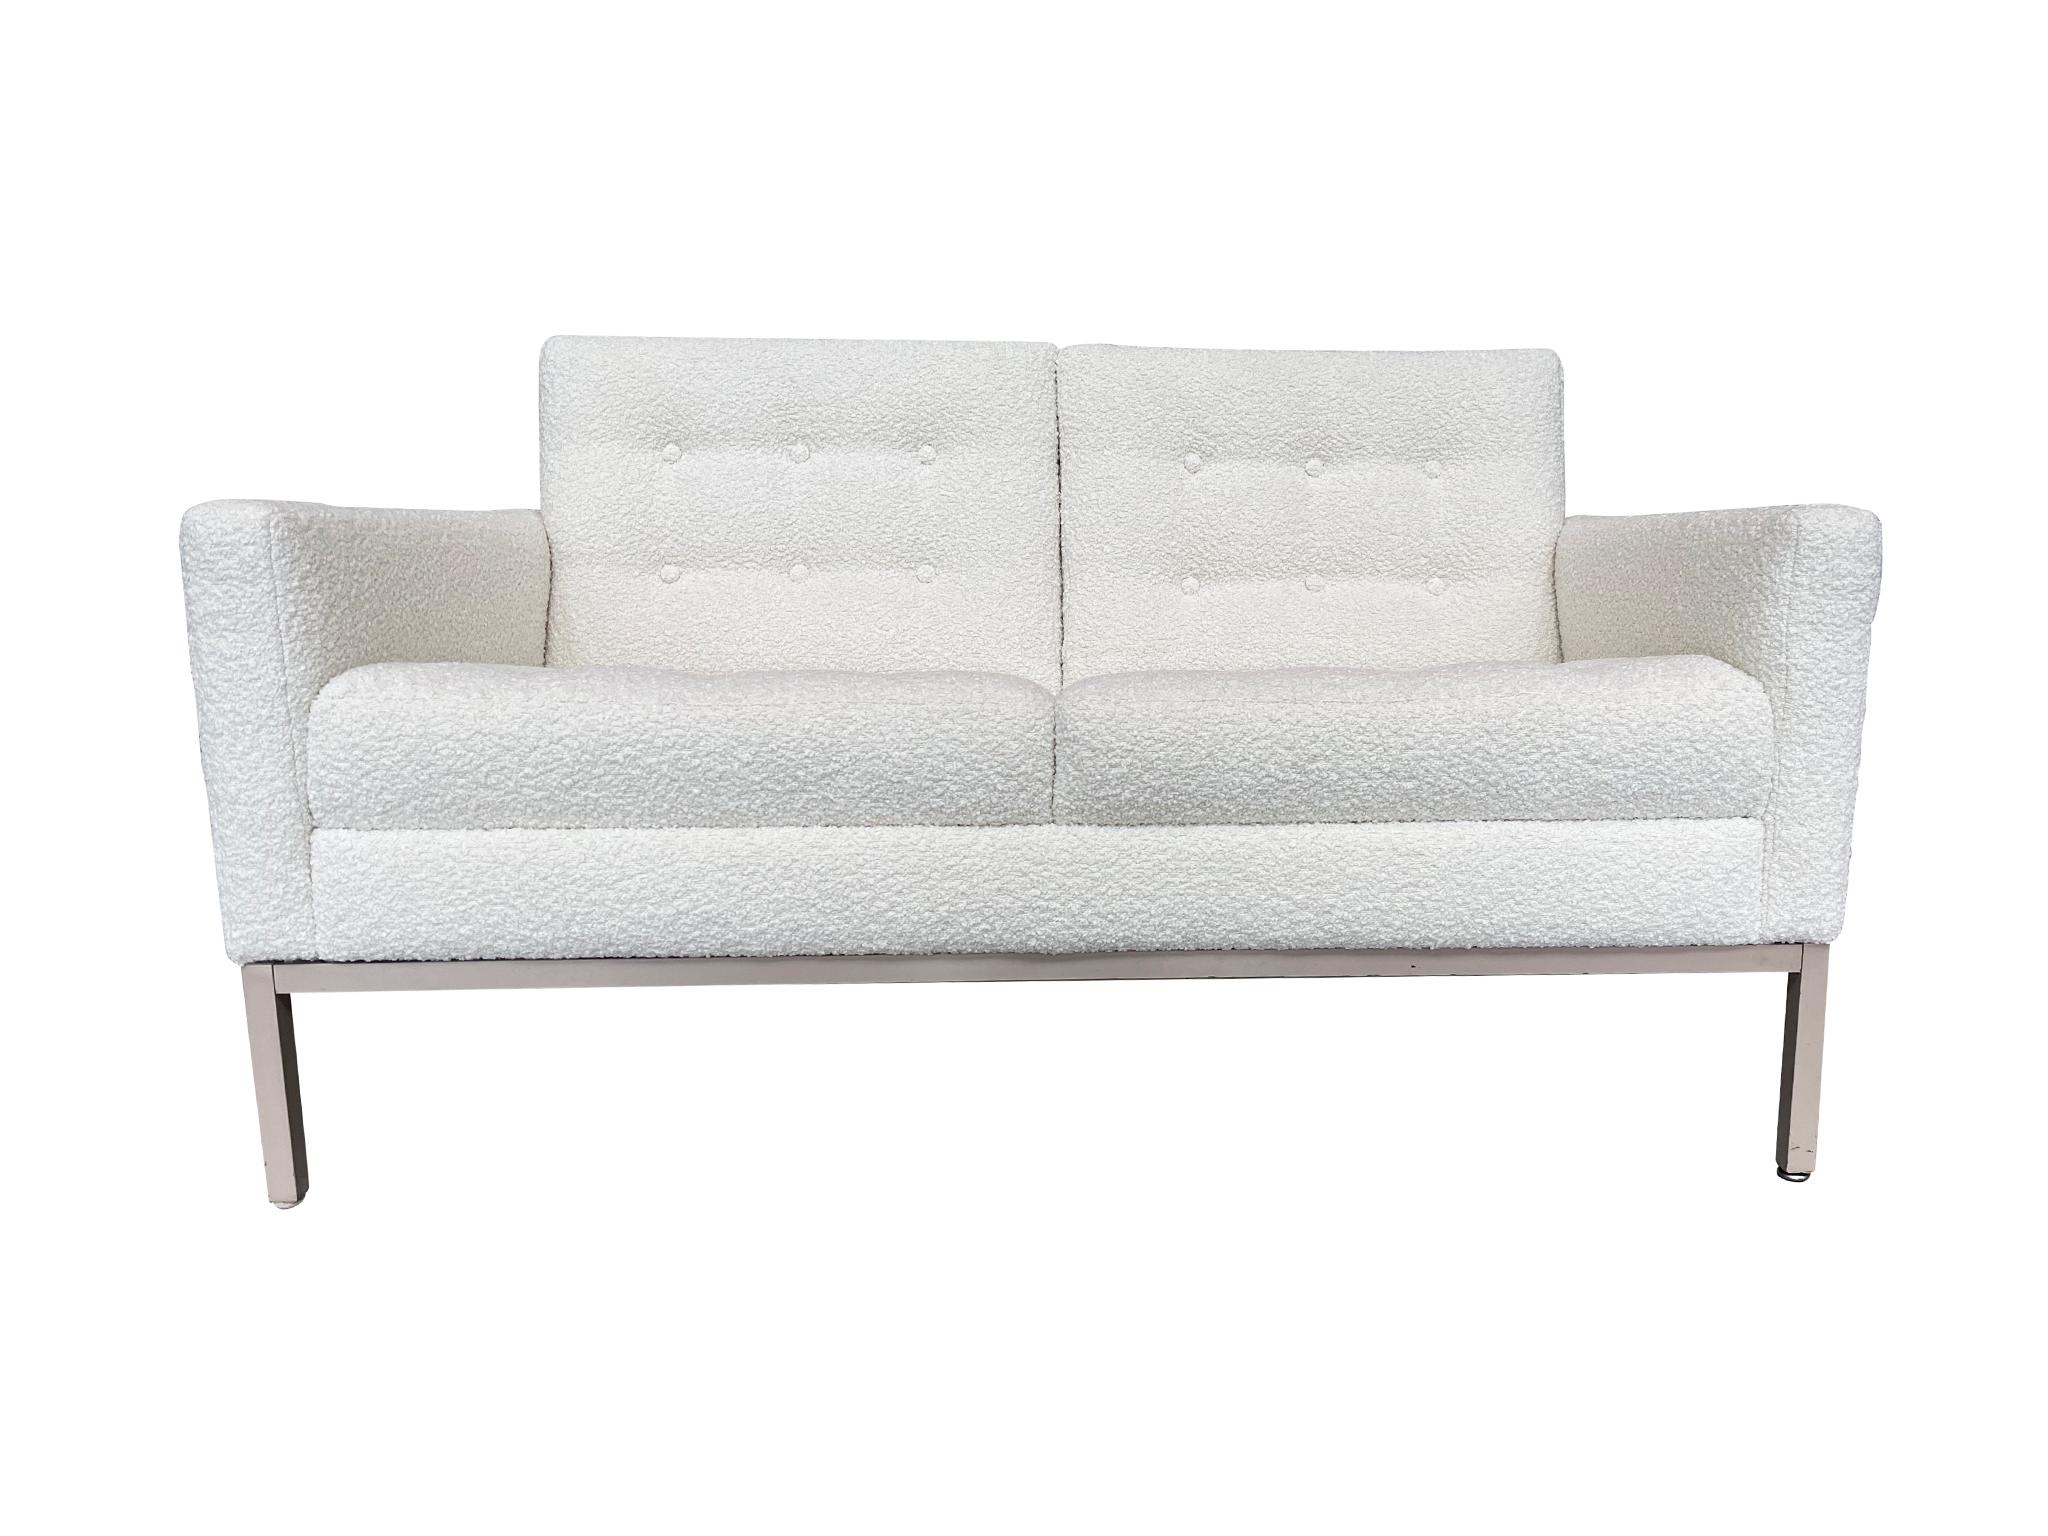 Das ursprünglich in den 1970er Jahren hergestellte Zweisitzer-Sofa der Patrician Furniture Company lehnt sich mit seiner Kombination aus kantigen und weichen Linien an das ikonische Sofa von Florence Knoll an. Das Sofa wurde neu gepolstert und mit